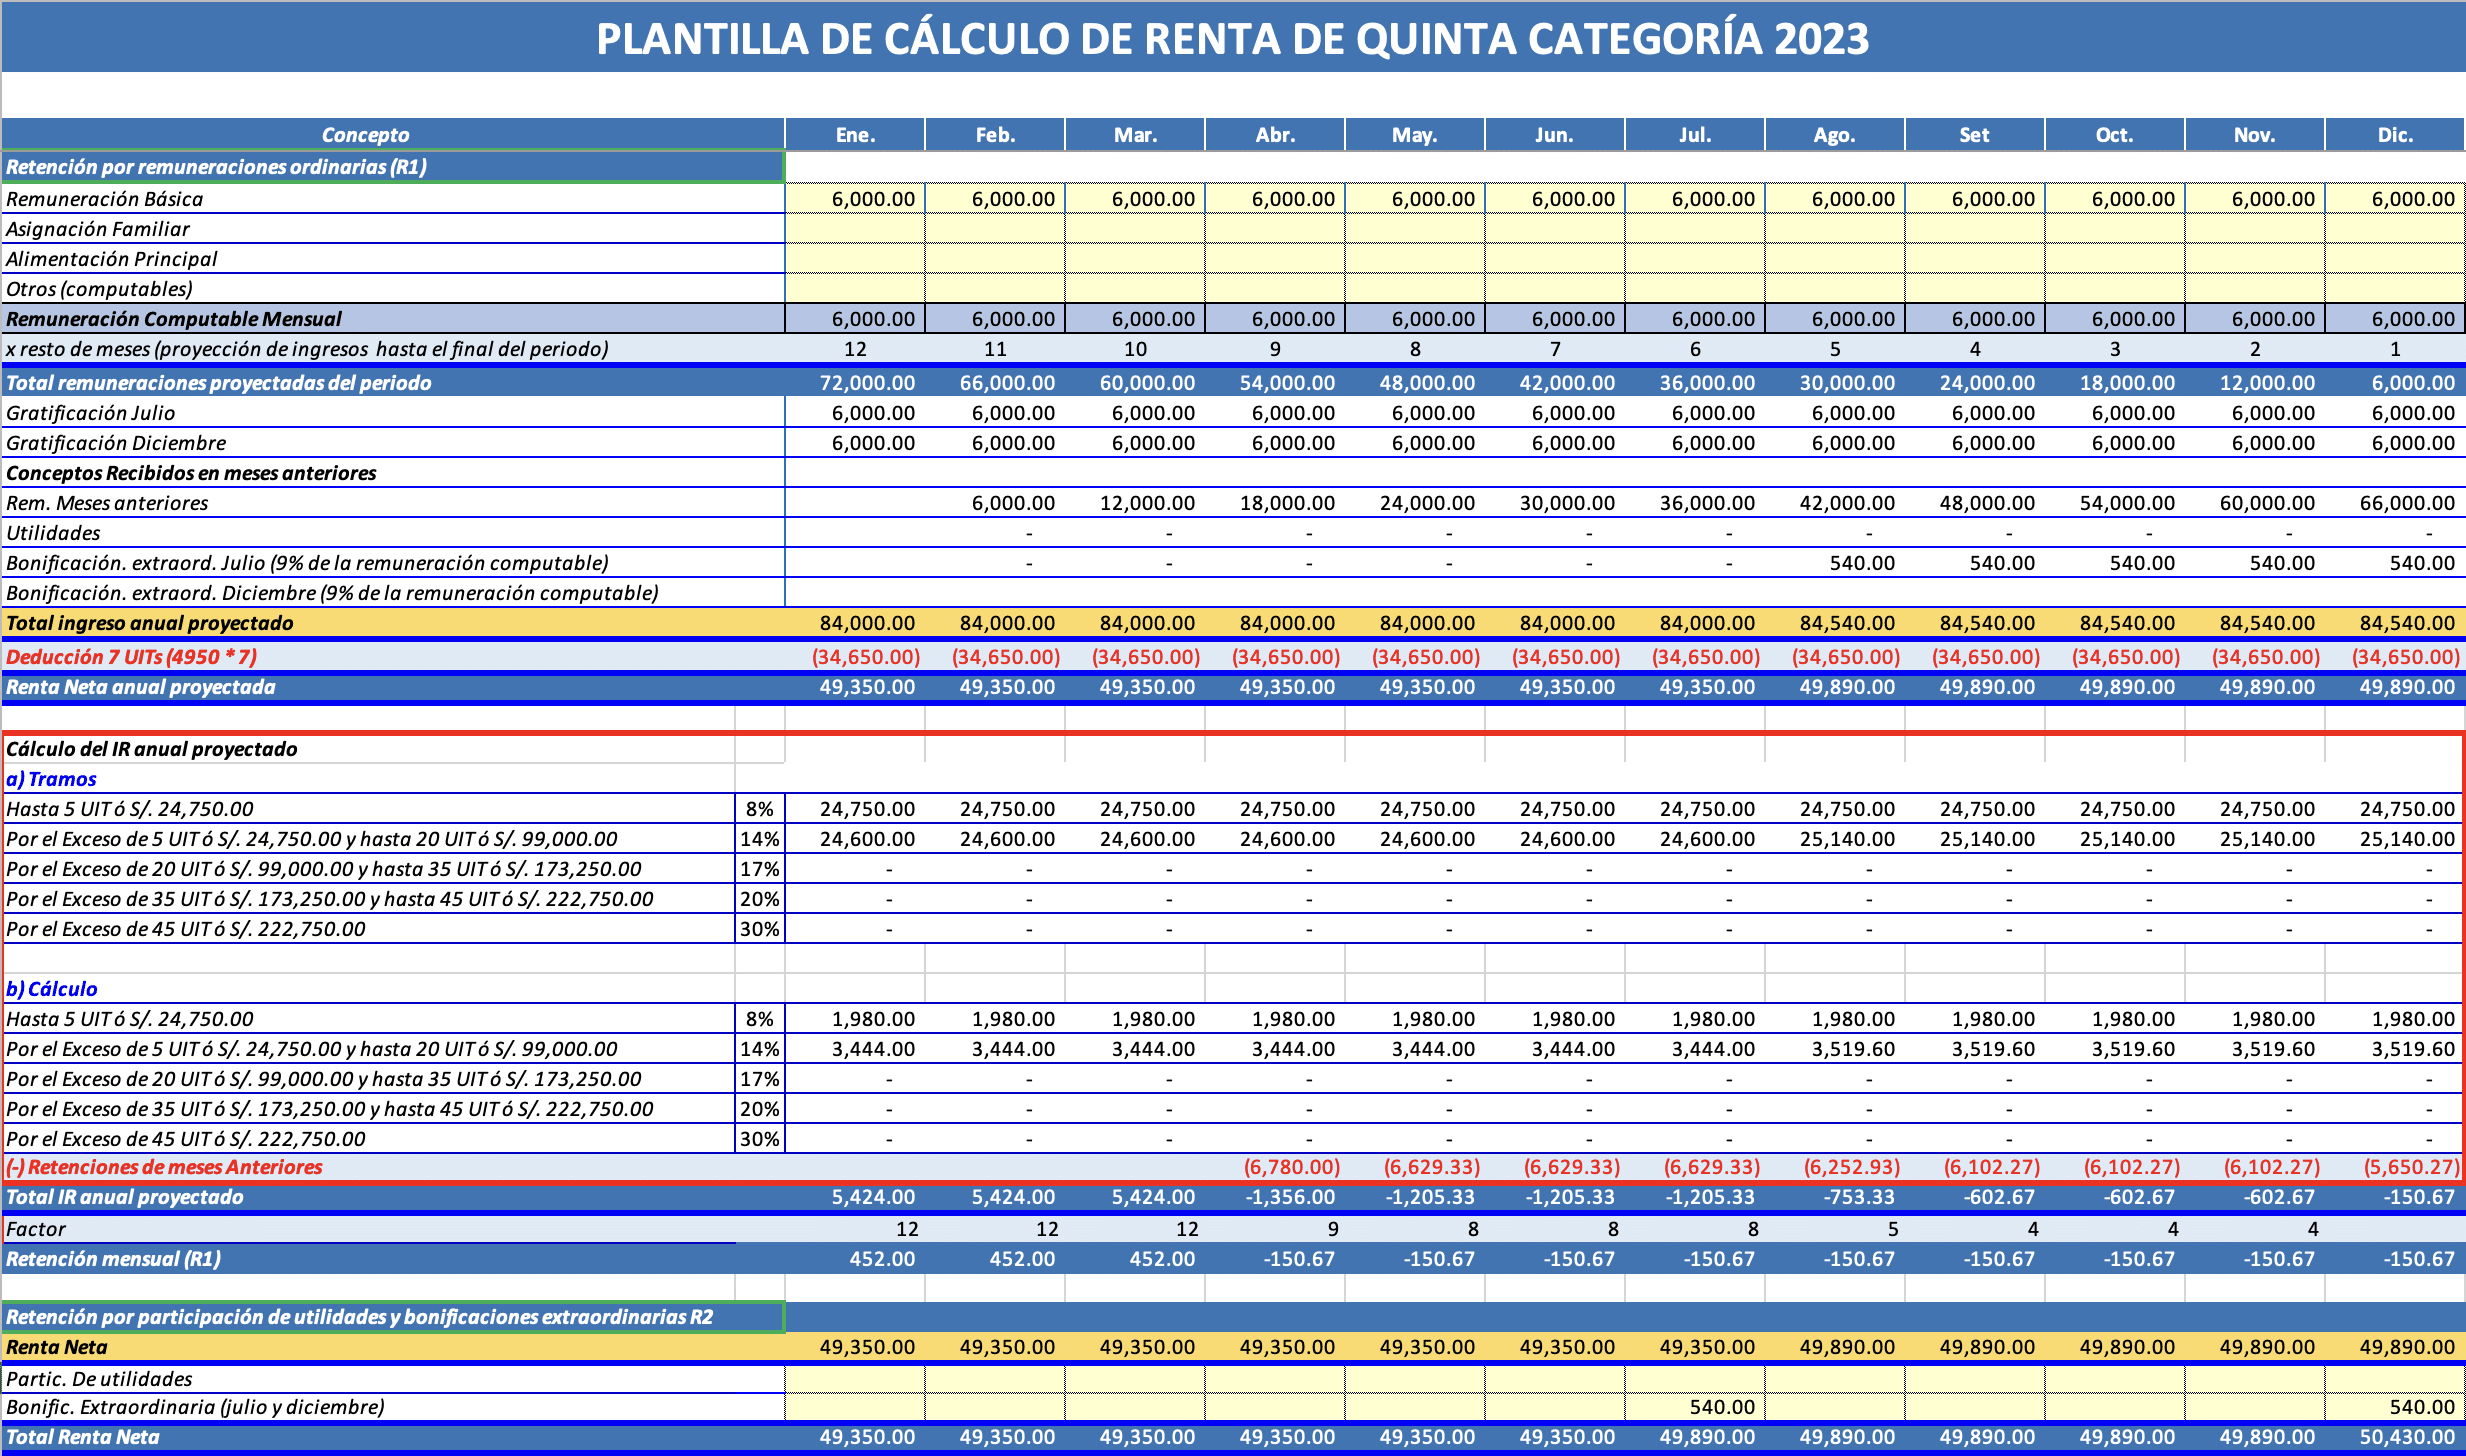 Plantilla de calculo de Renta de Quinta Categoria 2023 Excel